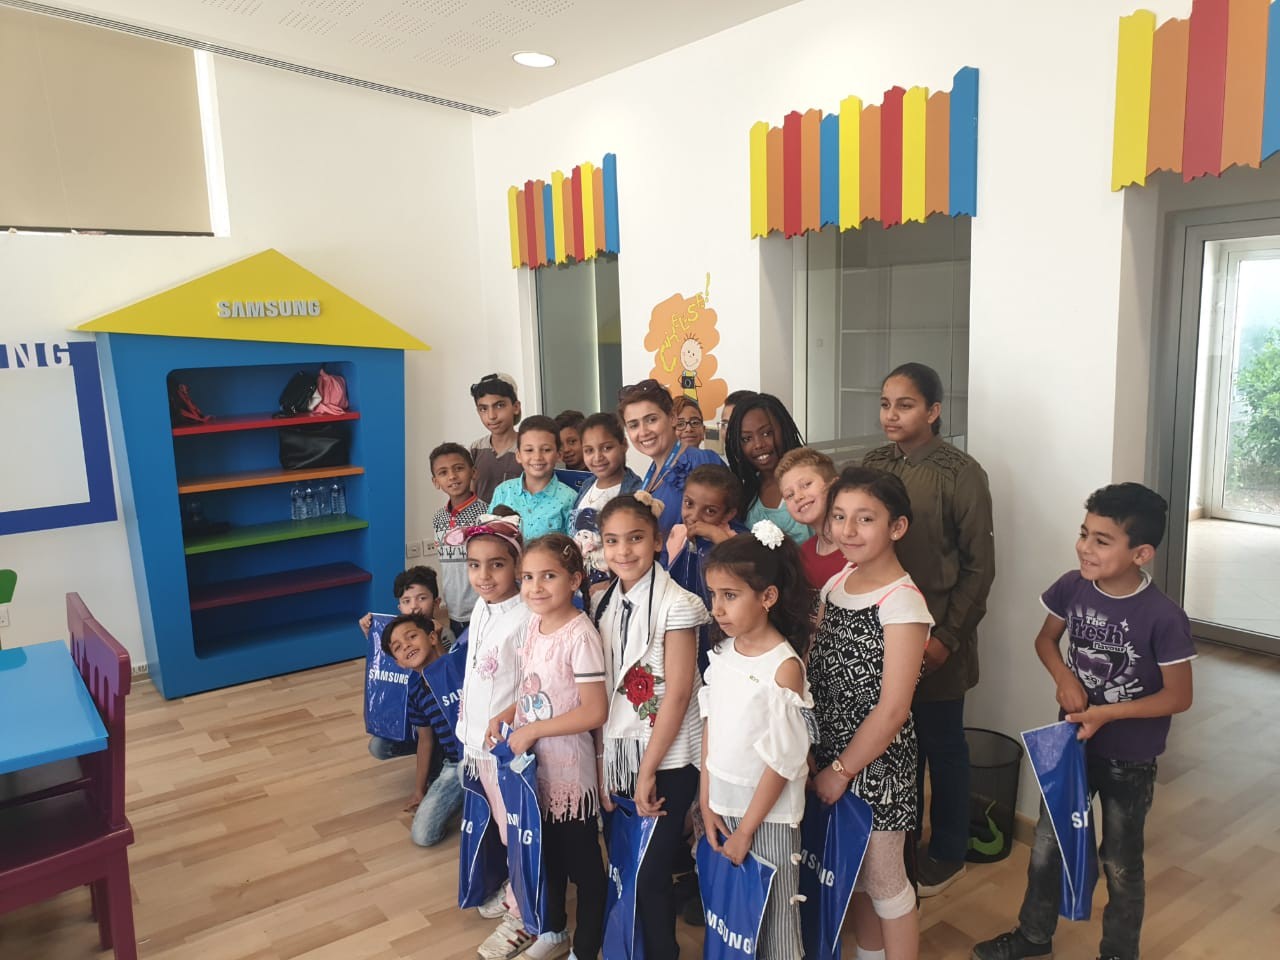 امتداداً لرعايتها للأطفال الأقل حظاً  &سامسونج إلكترونيكس& المشرق العربي تدعم مخيمات مركز هيا الثقافي الصيفية